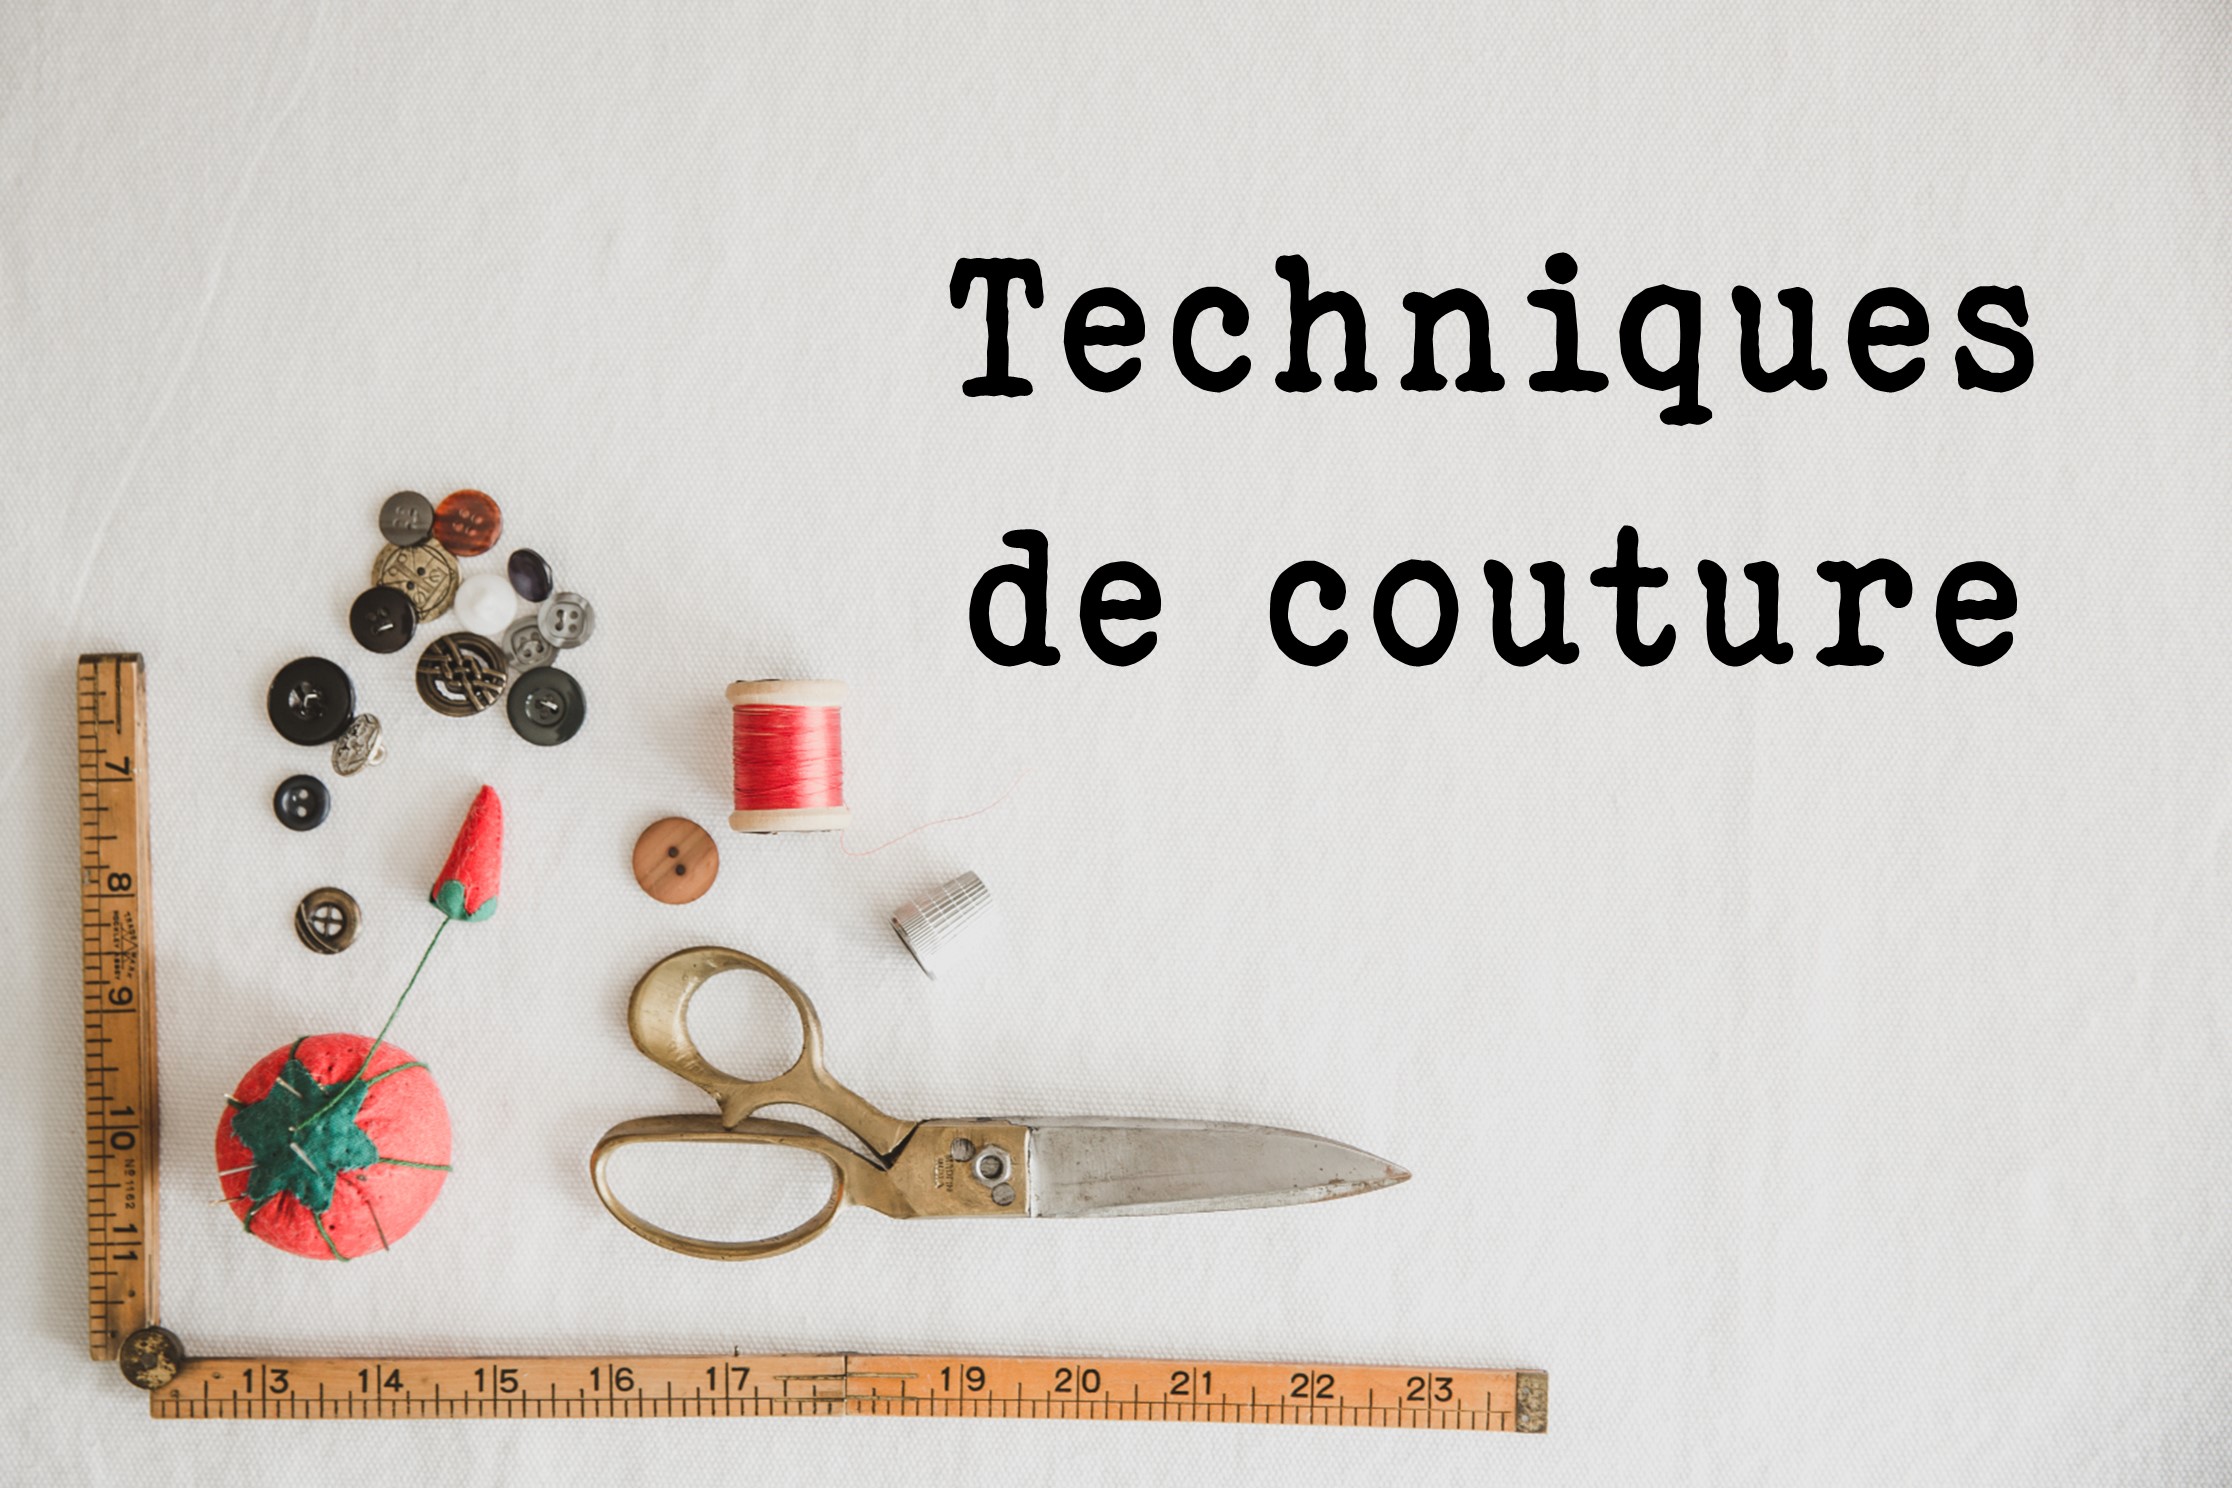 Techniques de couture - Atelier Gaumais